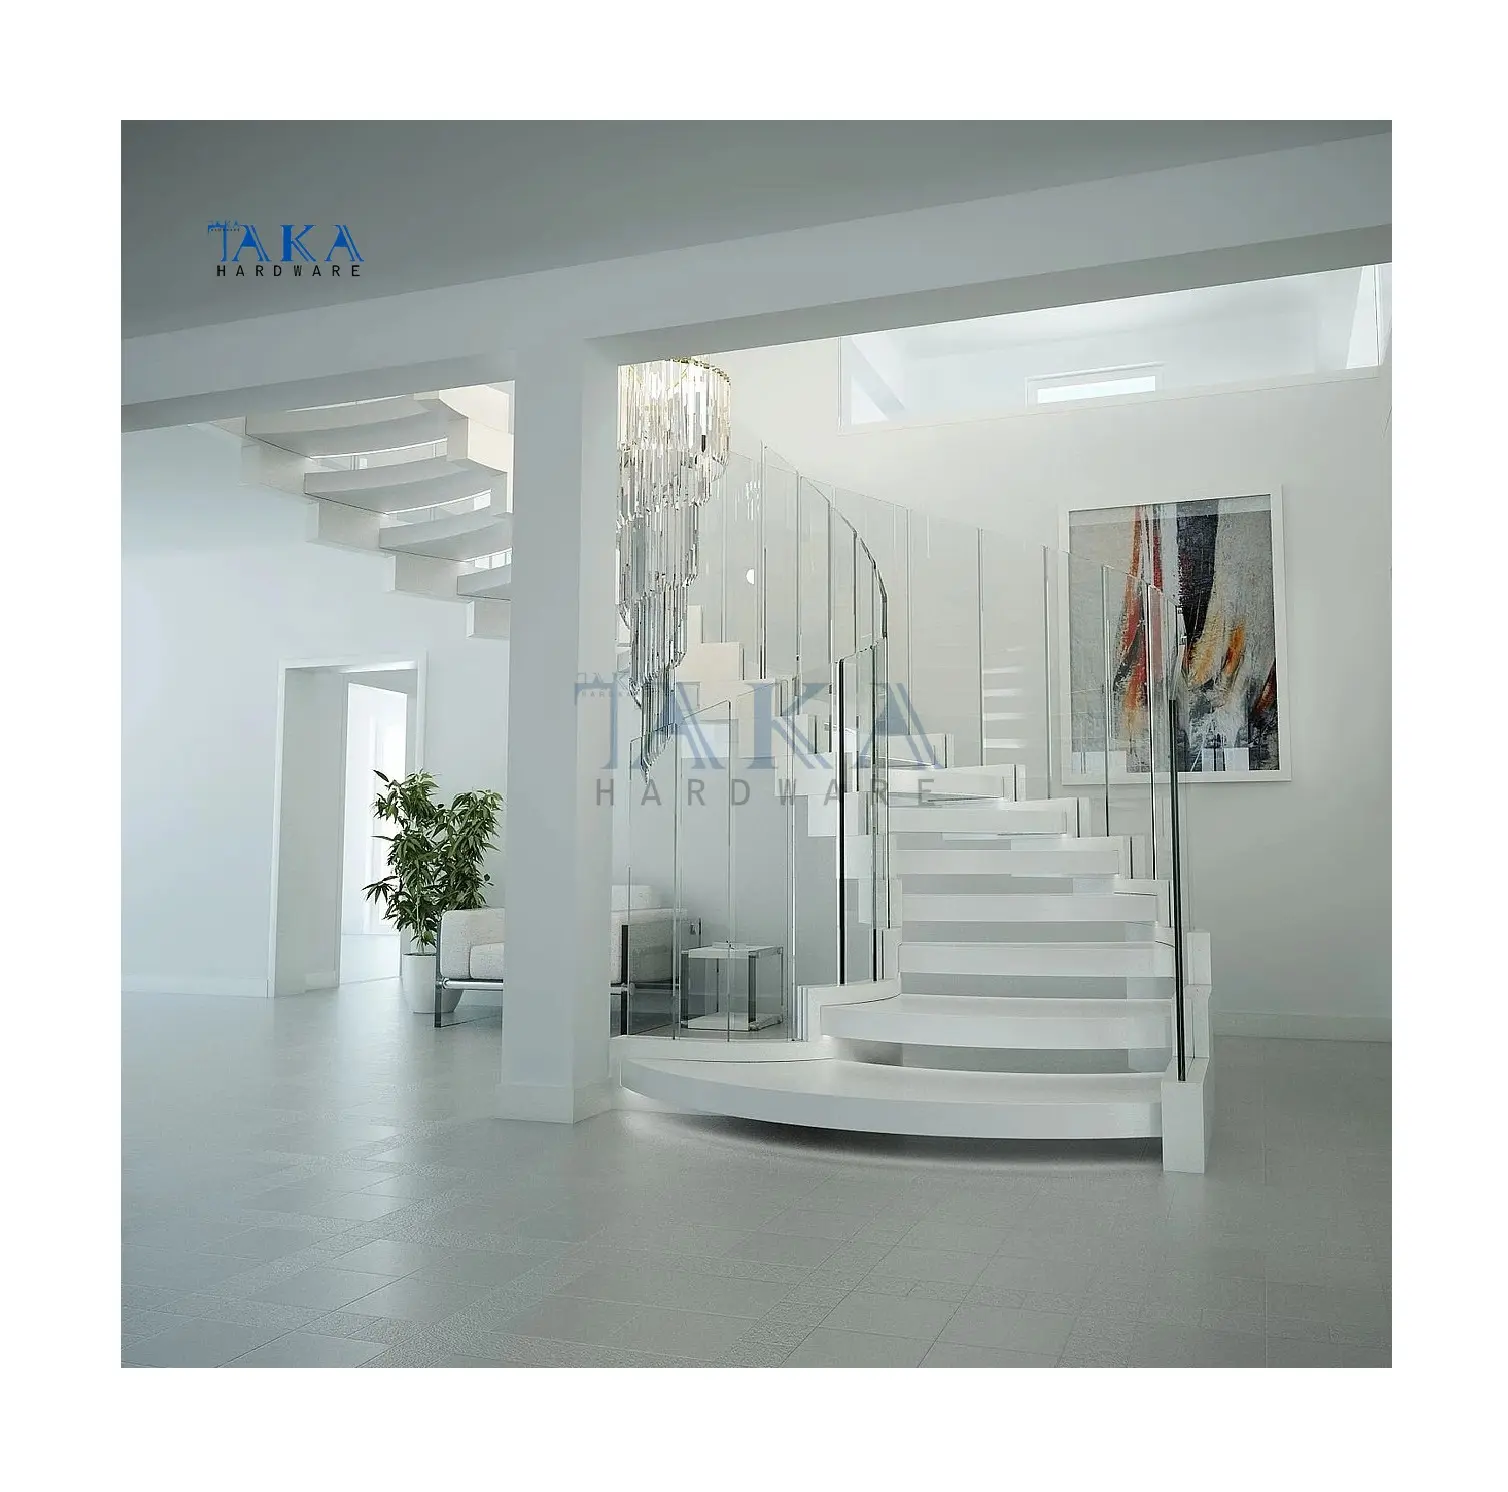 Escalera de madera blanca de estilo elegante con luz Led, diseño curvo flotante para escaleras